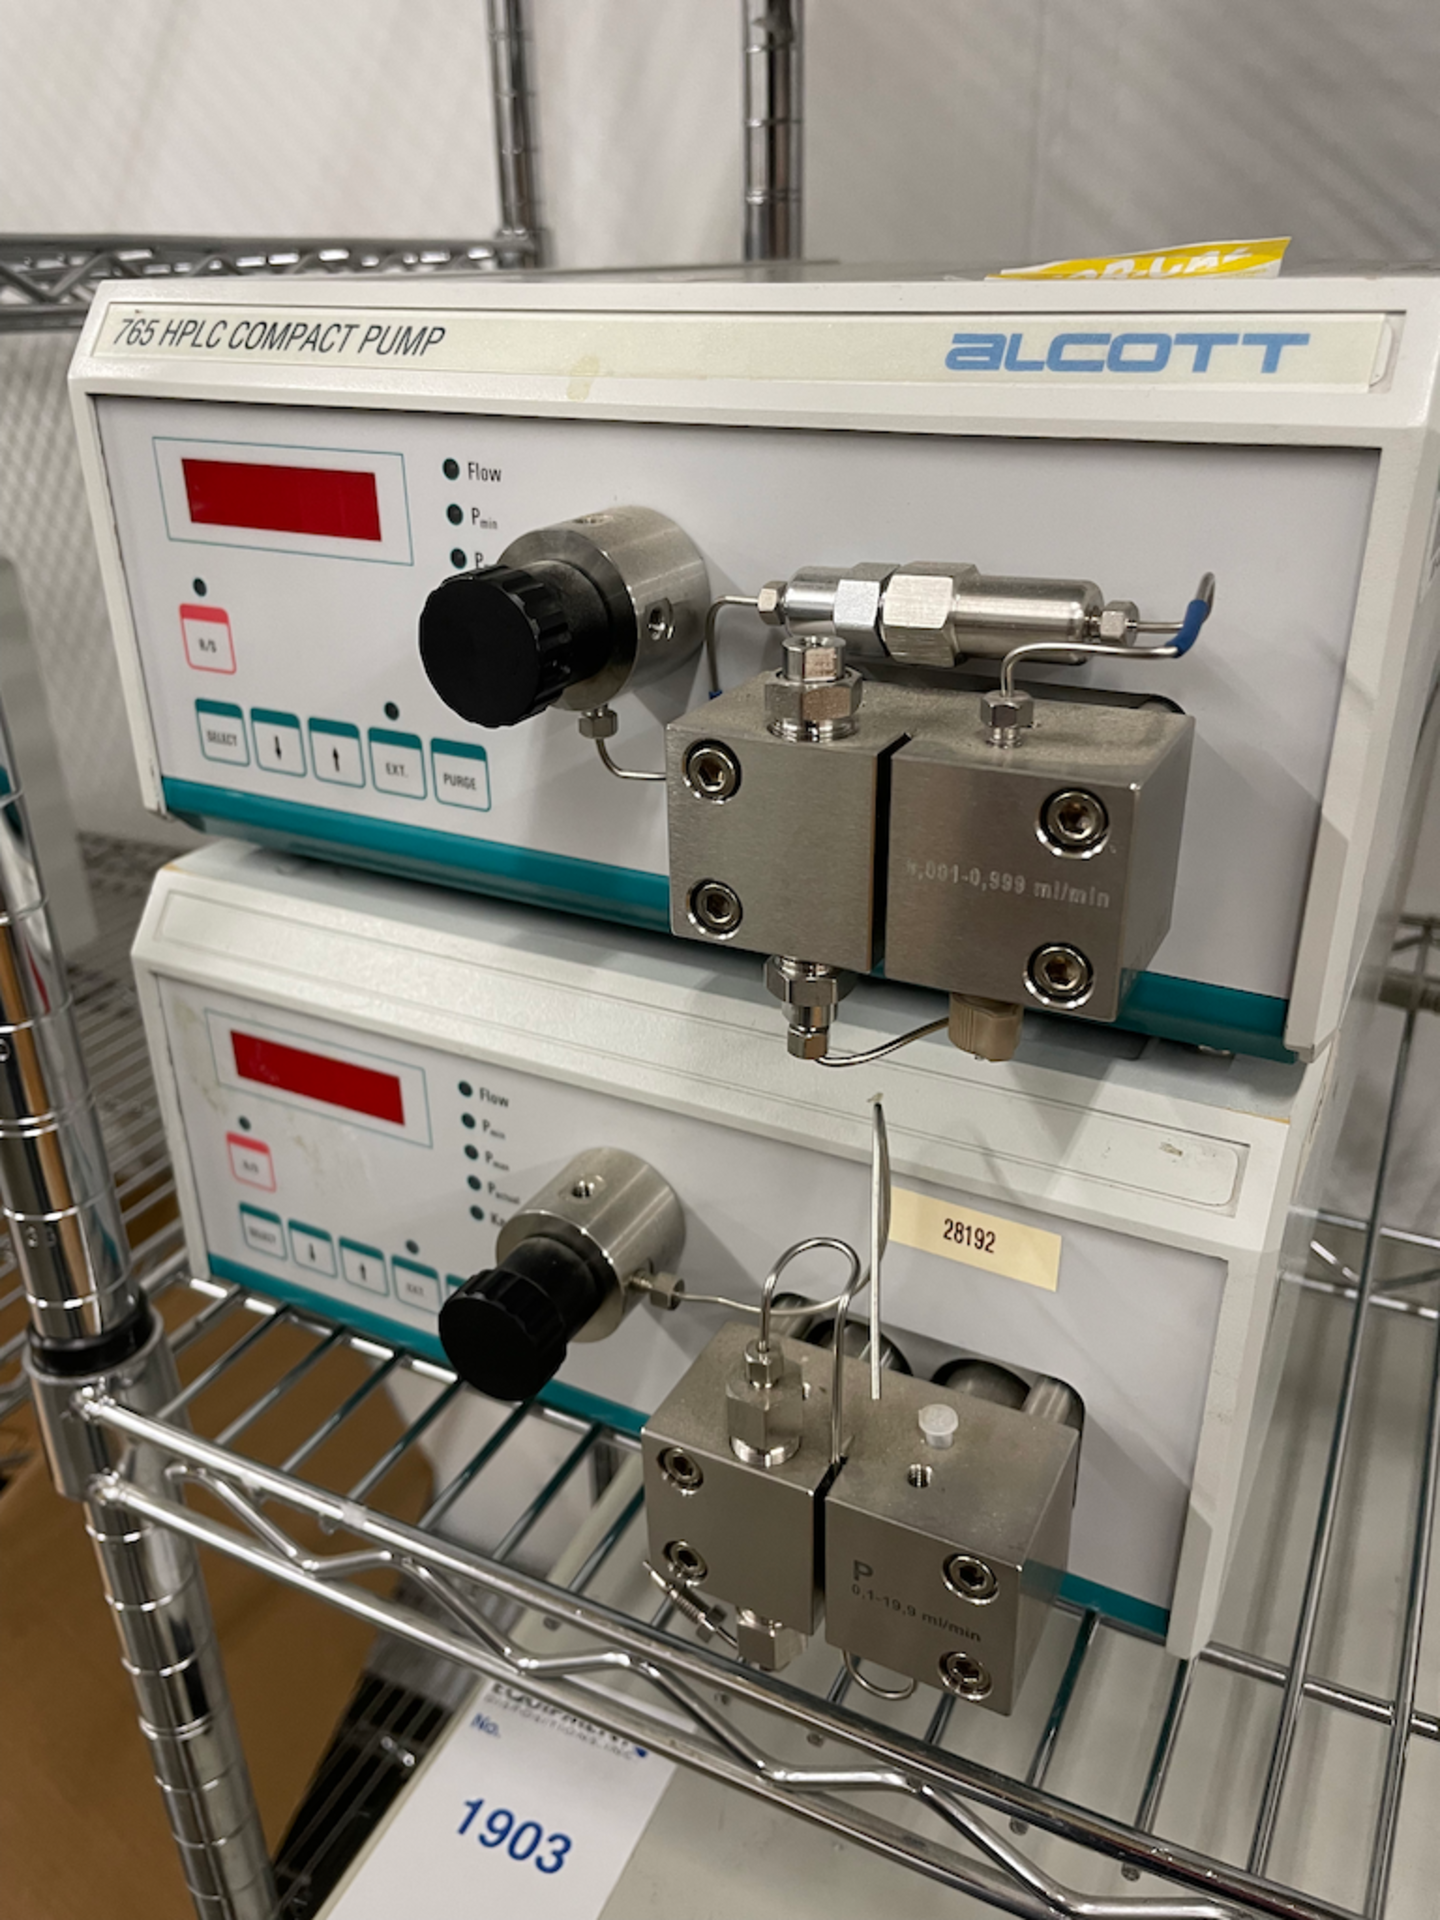 Lot: Qty-2 Alcott 765HP:C Compact Pumps